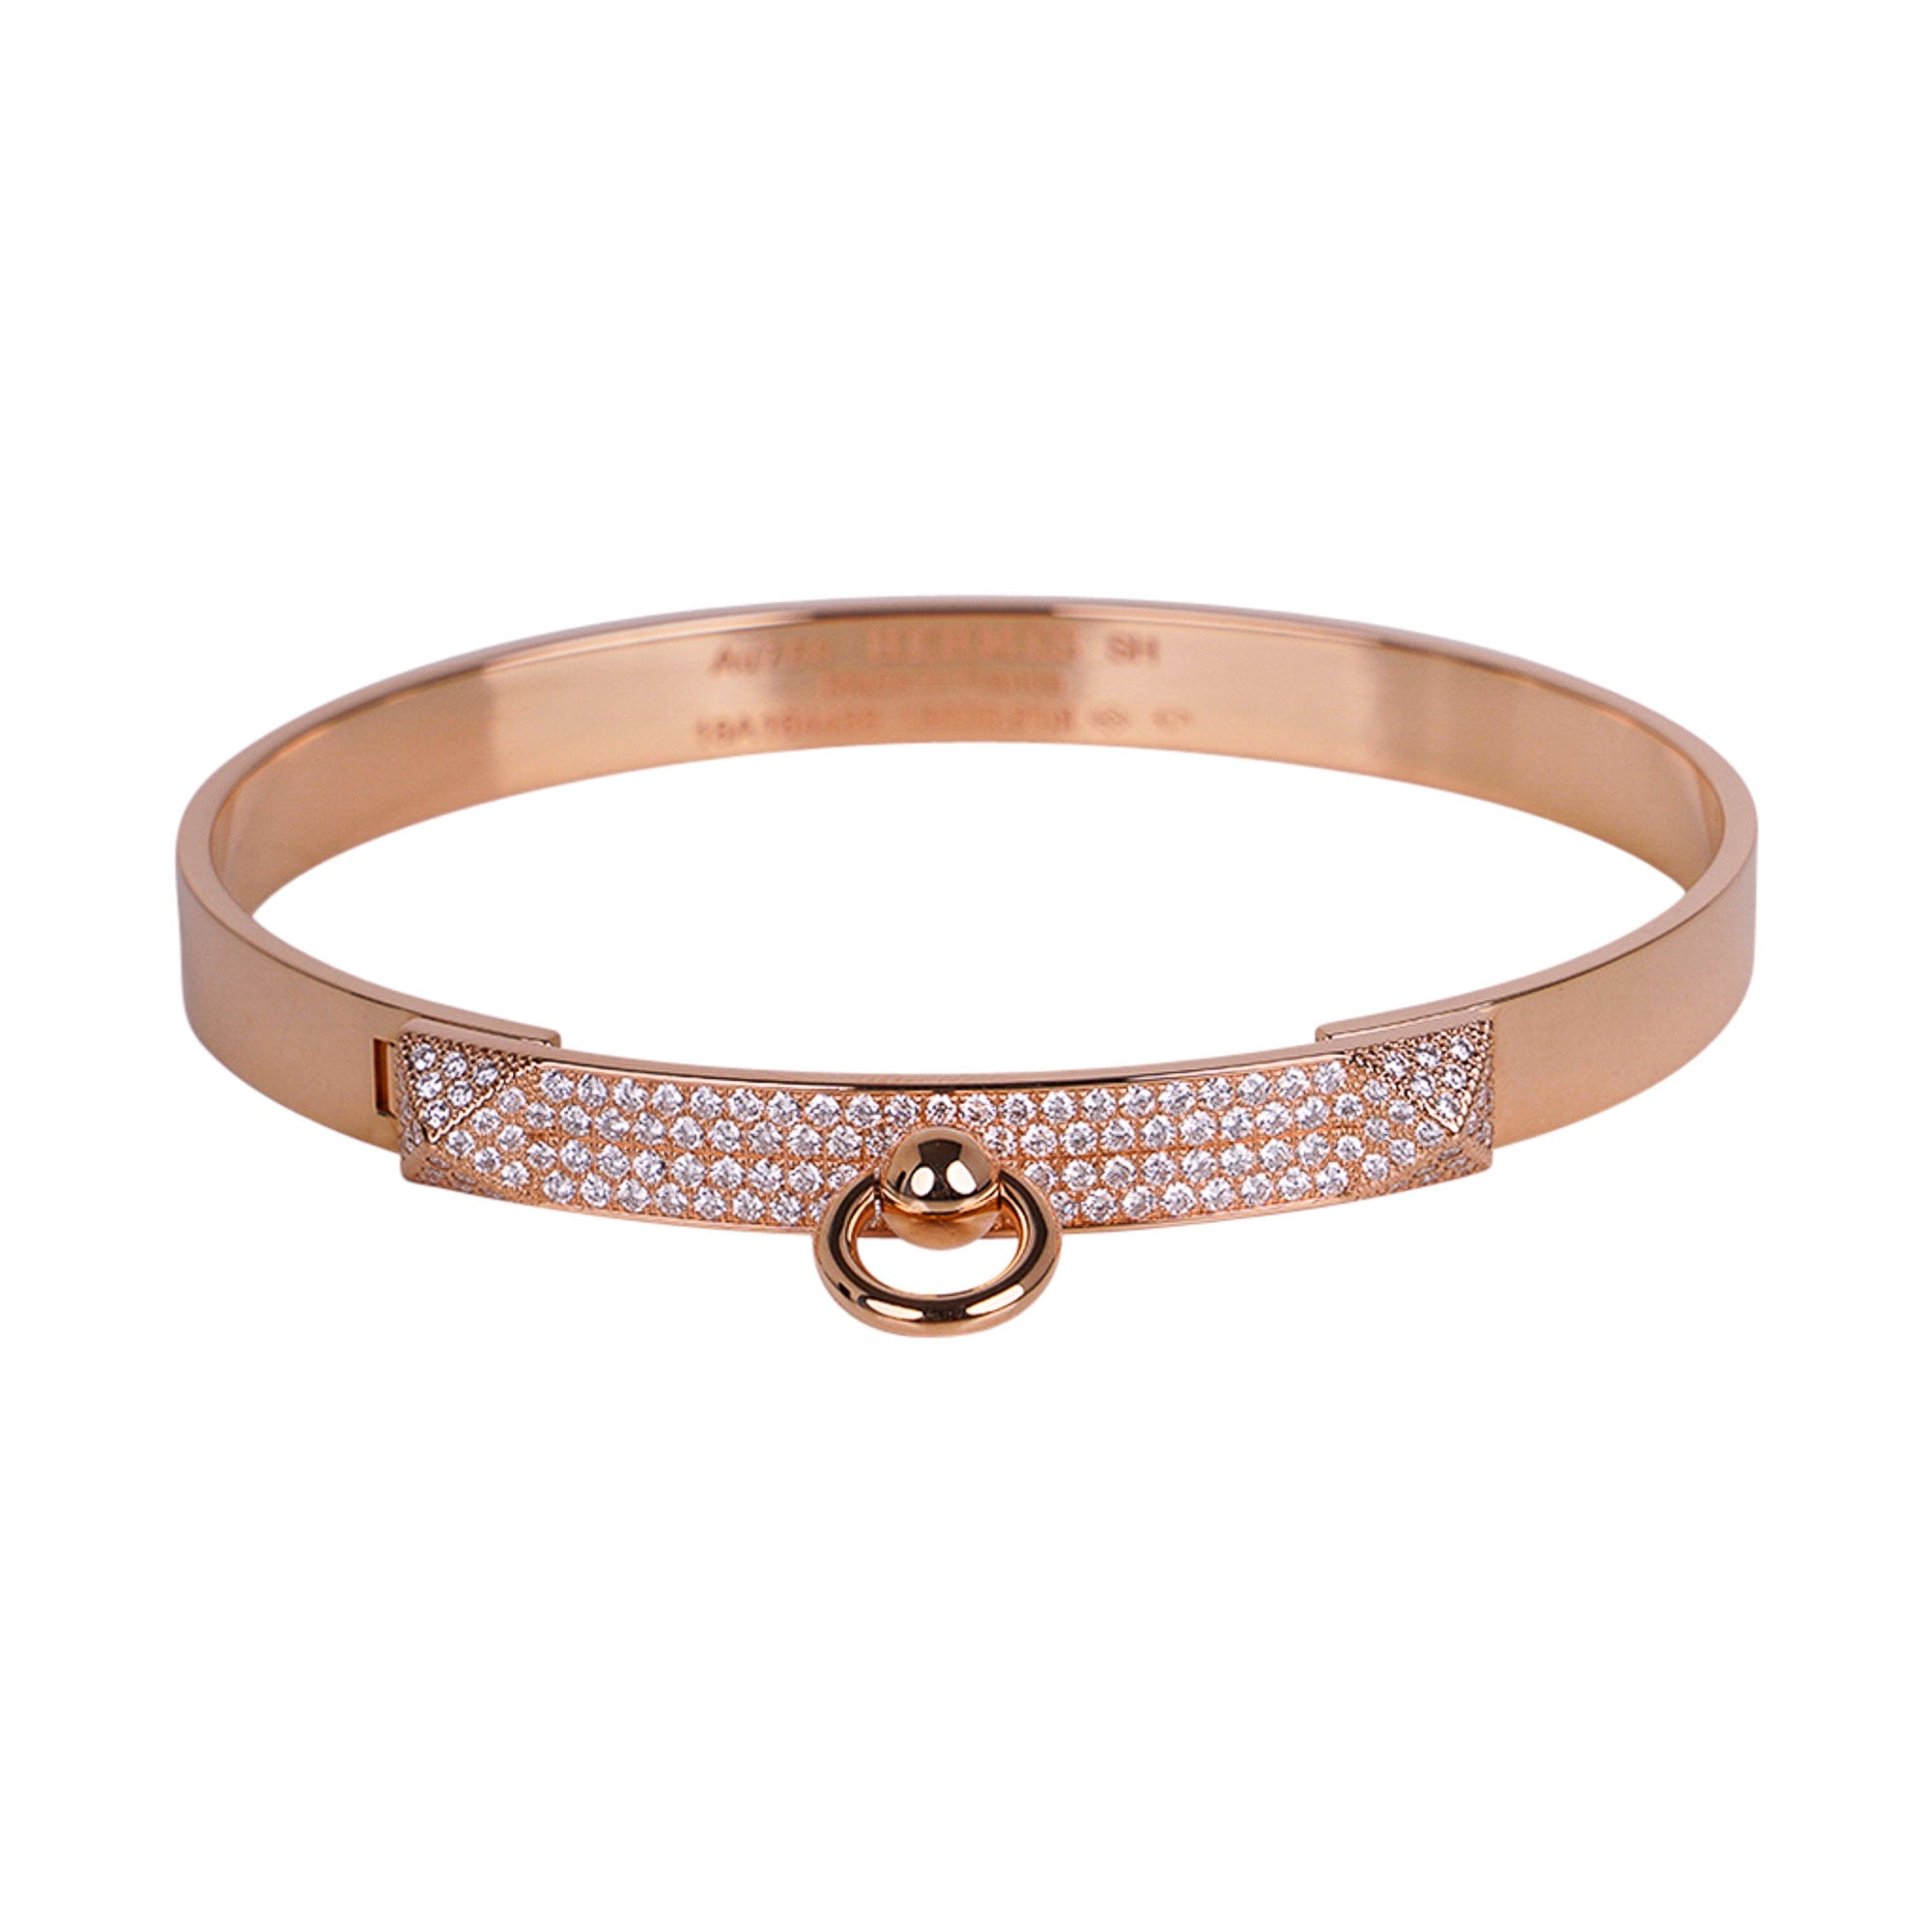 Hermès Collier De Chien Bracelet Rose Gold PM – Coco Approved Studio